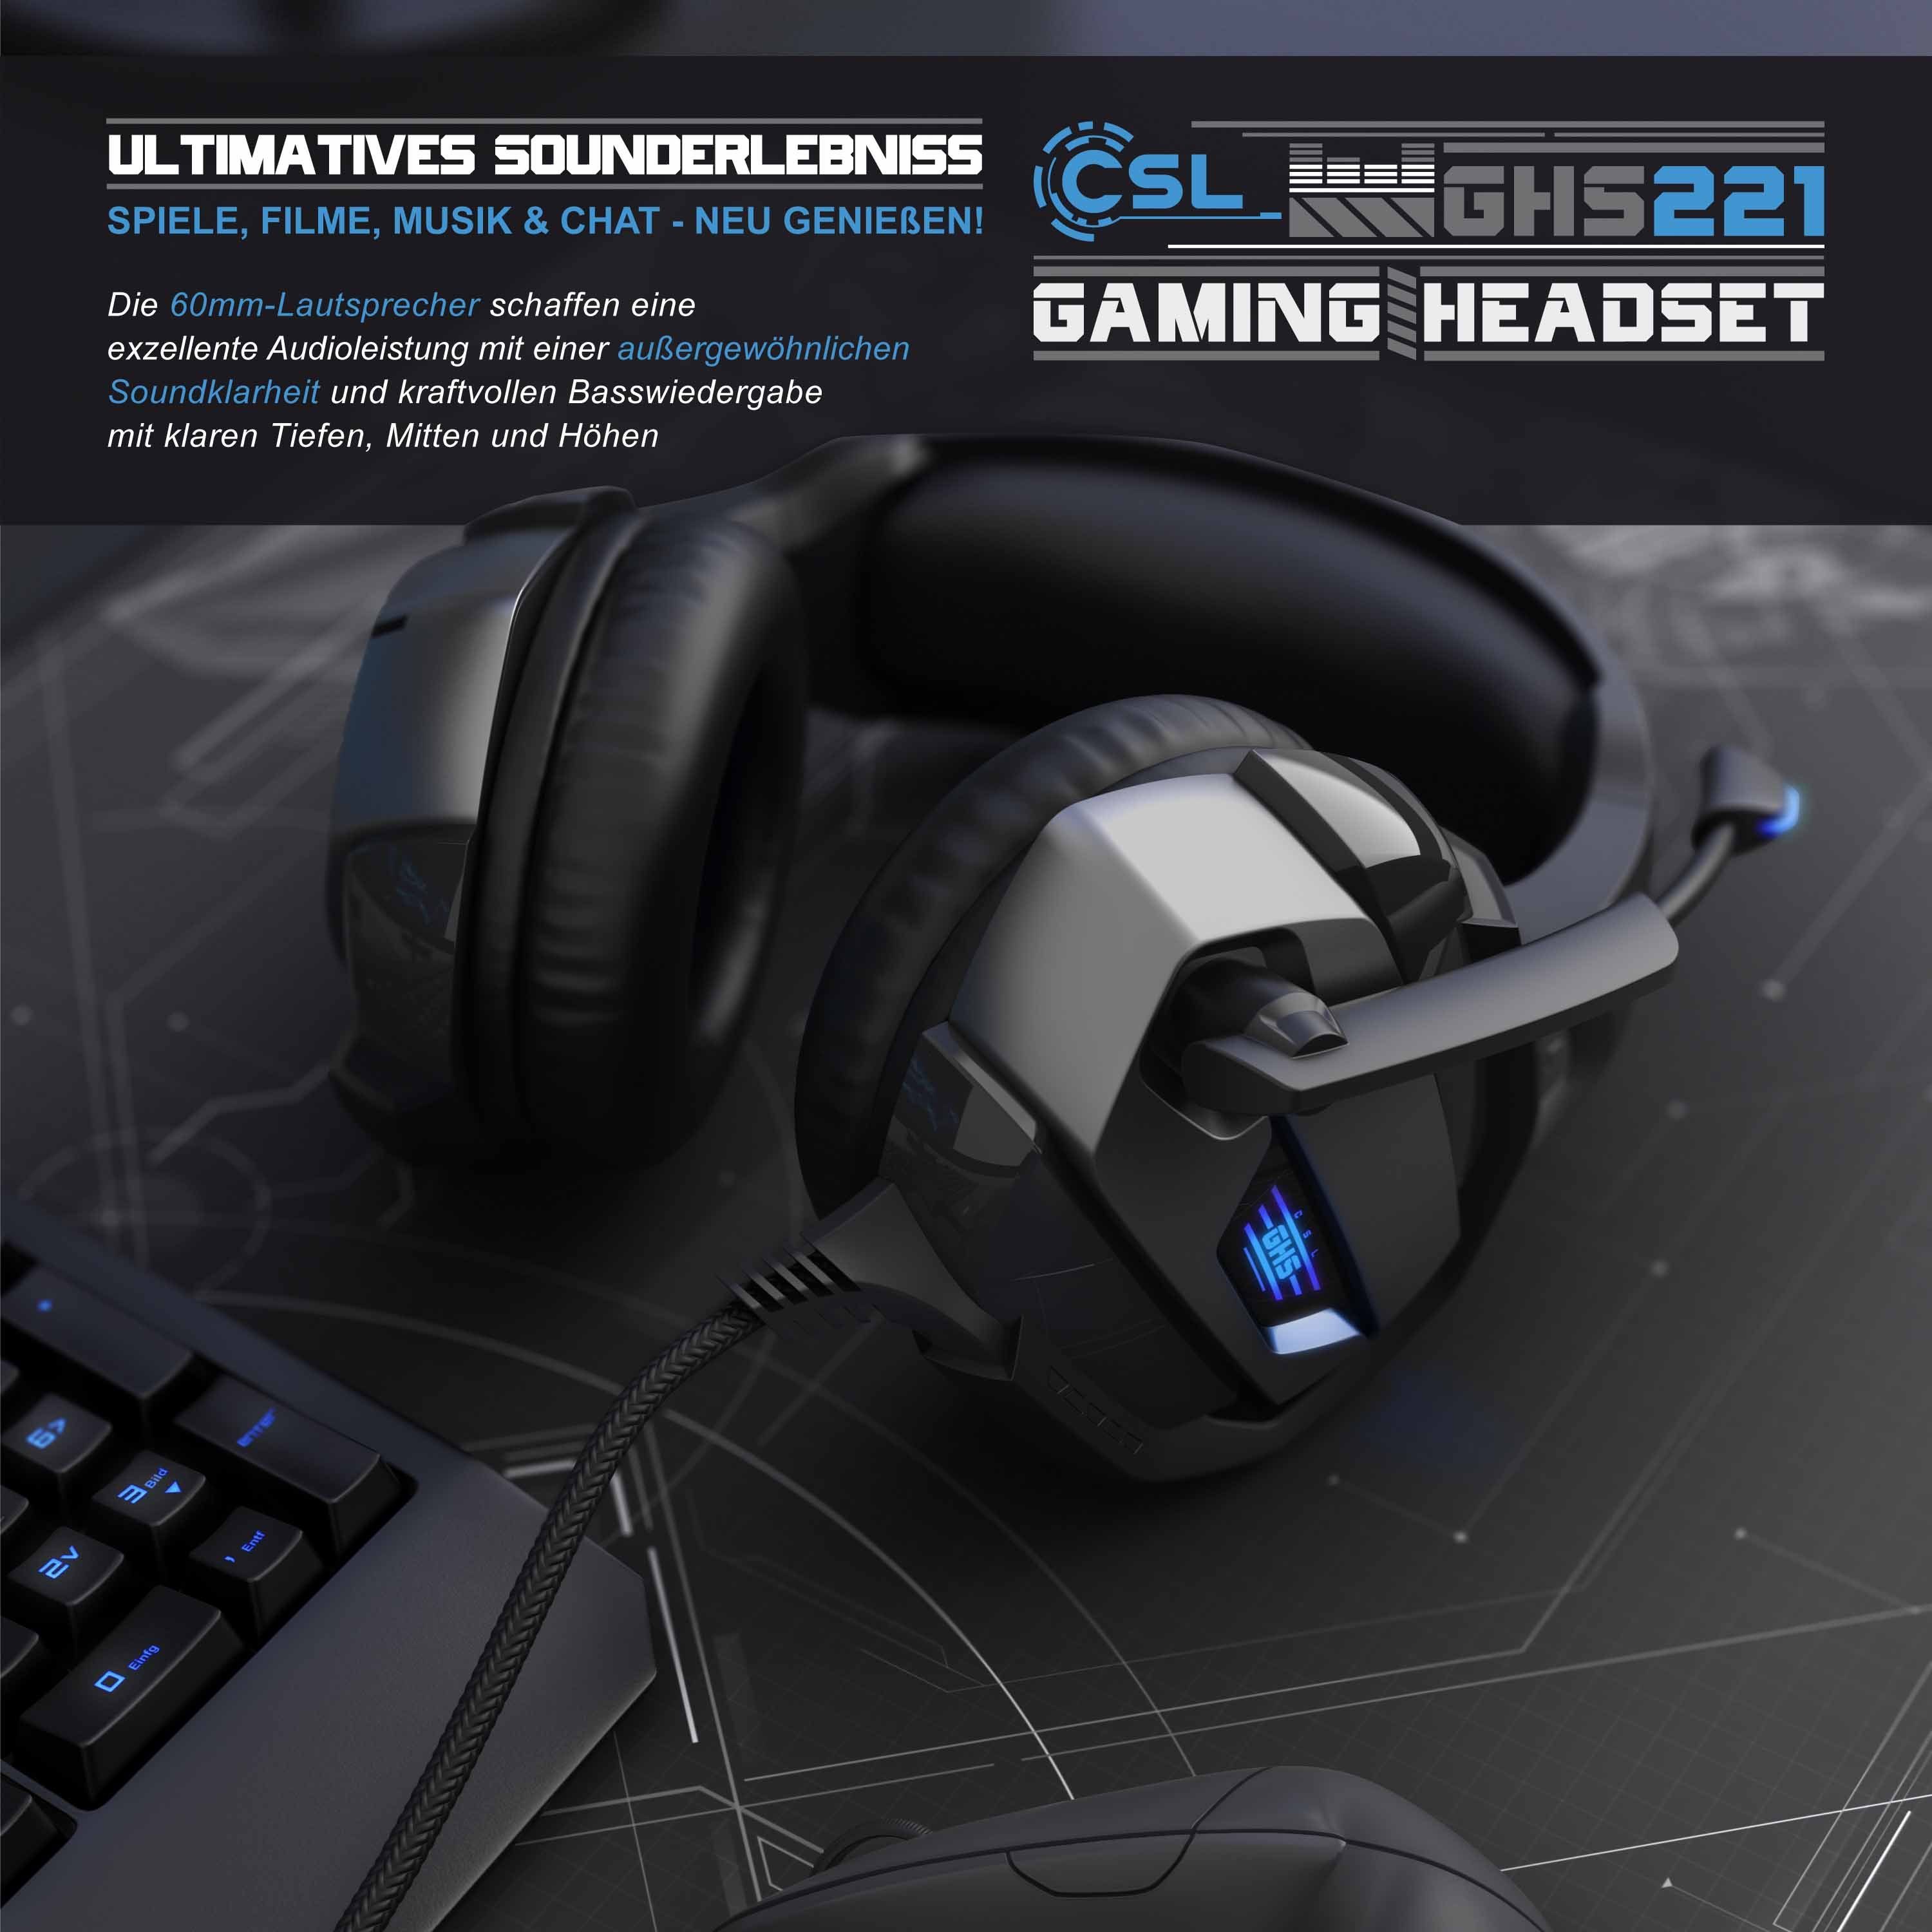 CSL Gaming-Headset Mikrofon AUX Tieftonbereich Bietet variabel (Blaue dynamische "GHS-221" Mittel- Headset Pro) PS4/ PS4 LED-Beleuchtung; Basswiedergabe, geeignet Hoch-, für Kopfbügel PC/ + Gaming und kristallklaren verstellbar